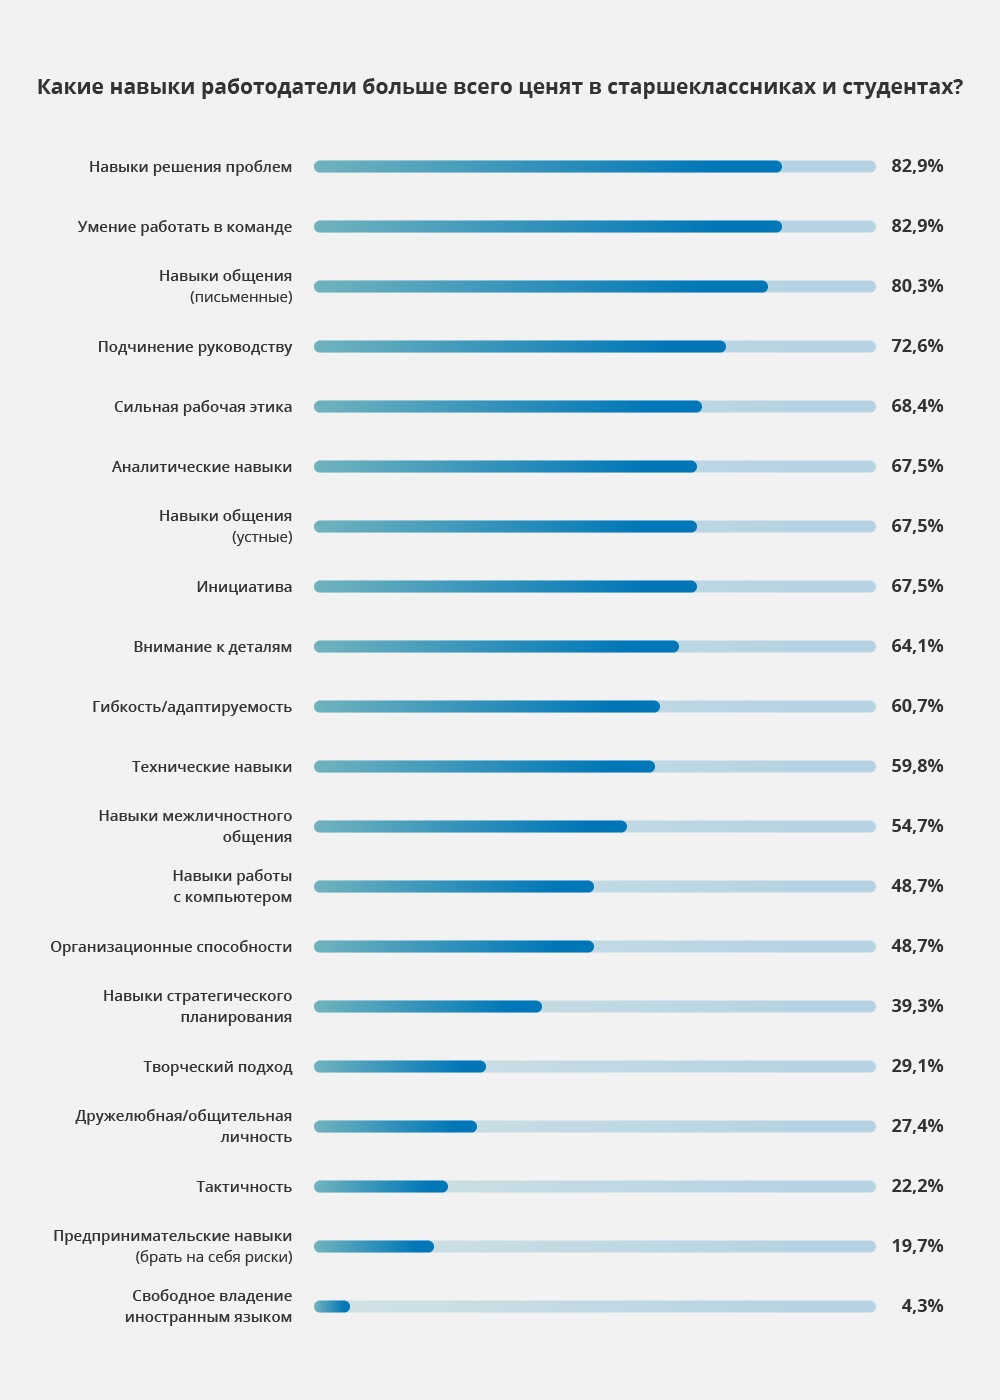 какие навыки работодатели больше всего ценят в старшеклассниках и студентах?